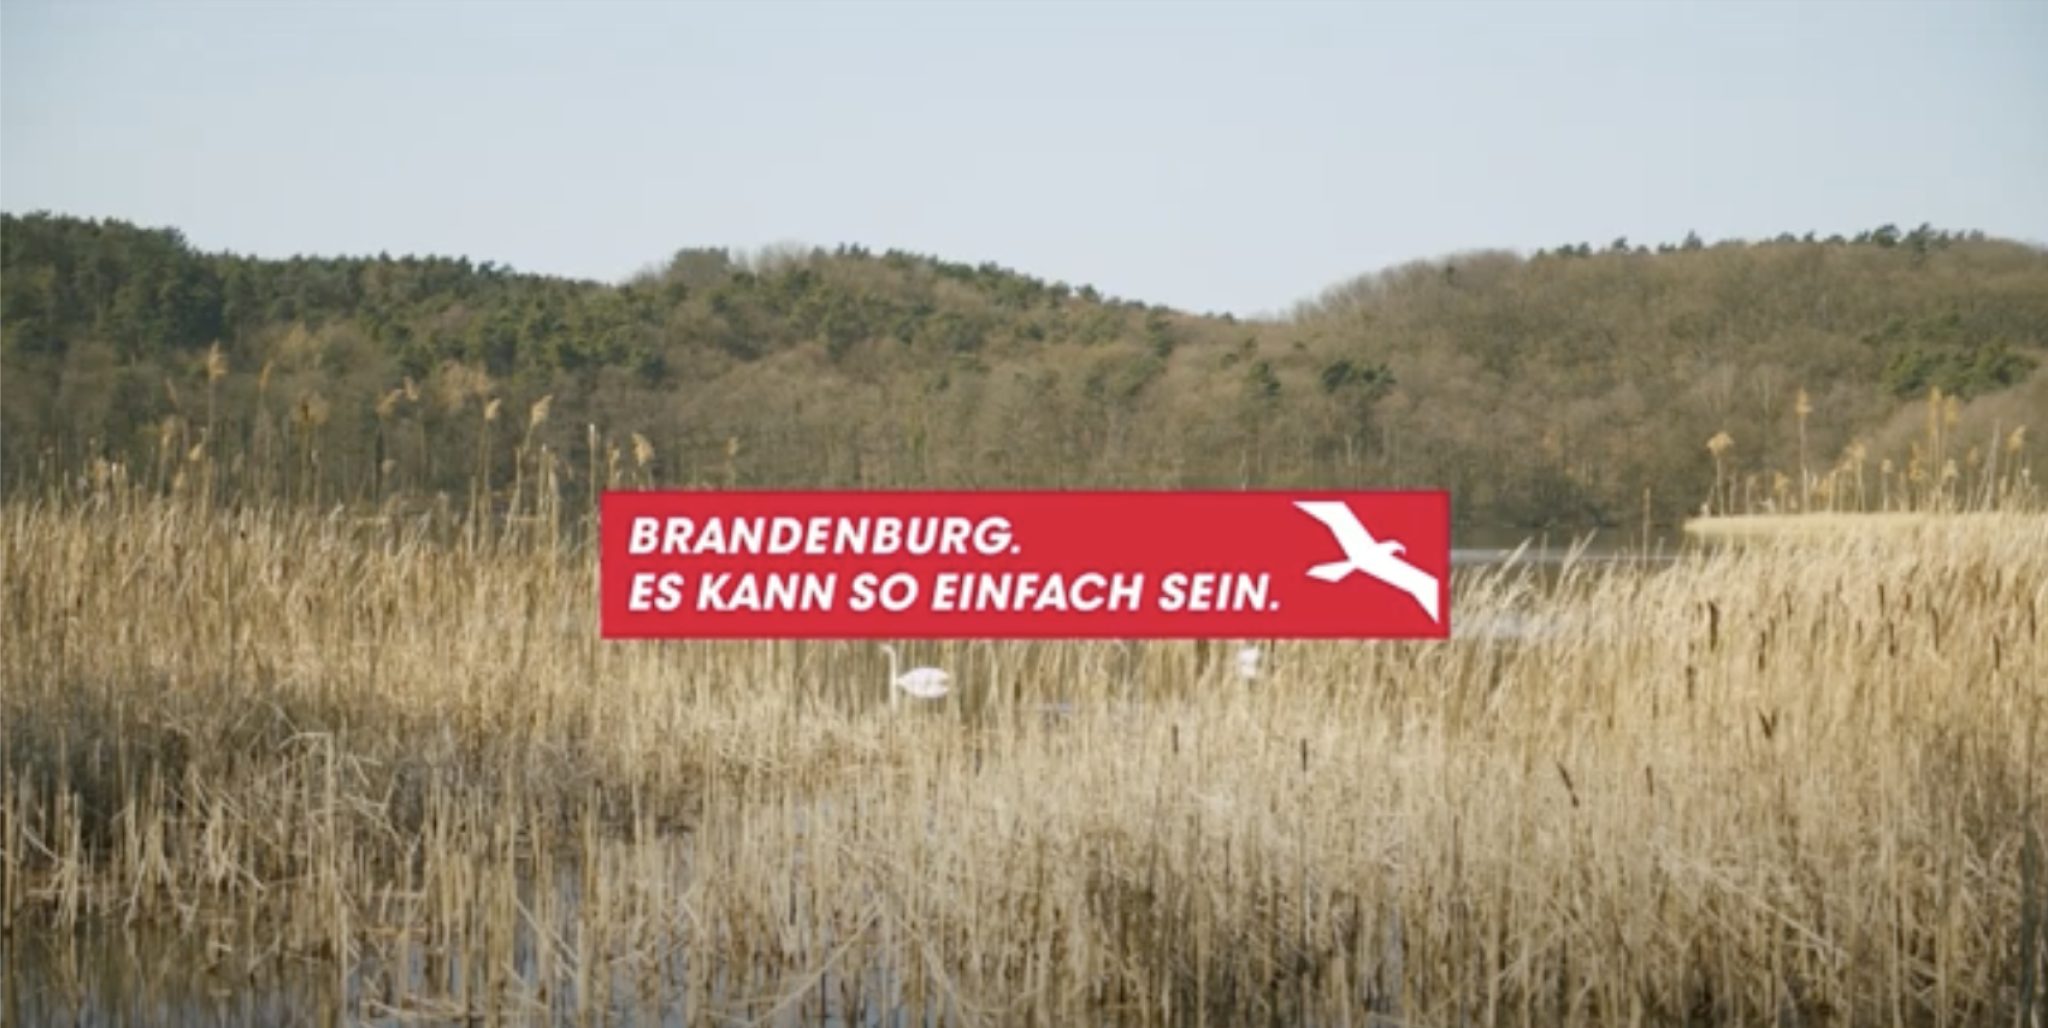 Ein See mit Schilf, im Hintergrund ein Schwan und ein Wald. Im Vordergrund eine Aufschrift "Brandenburg. Es kann so einfach sein"